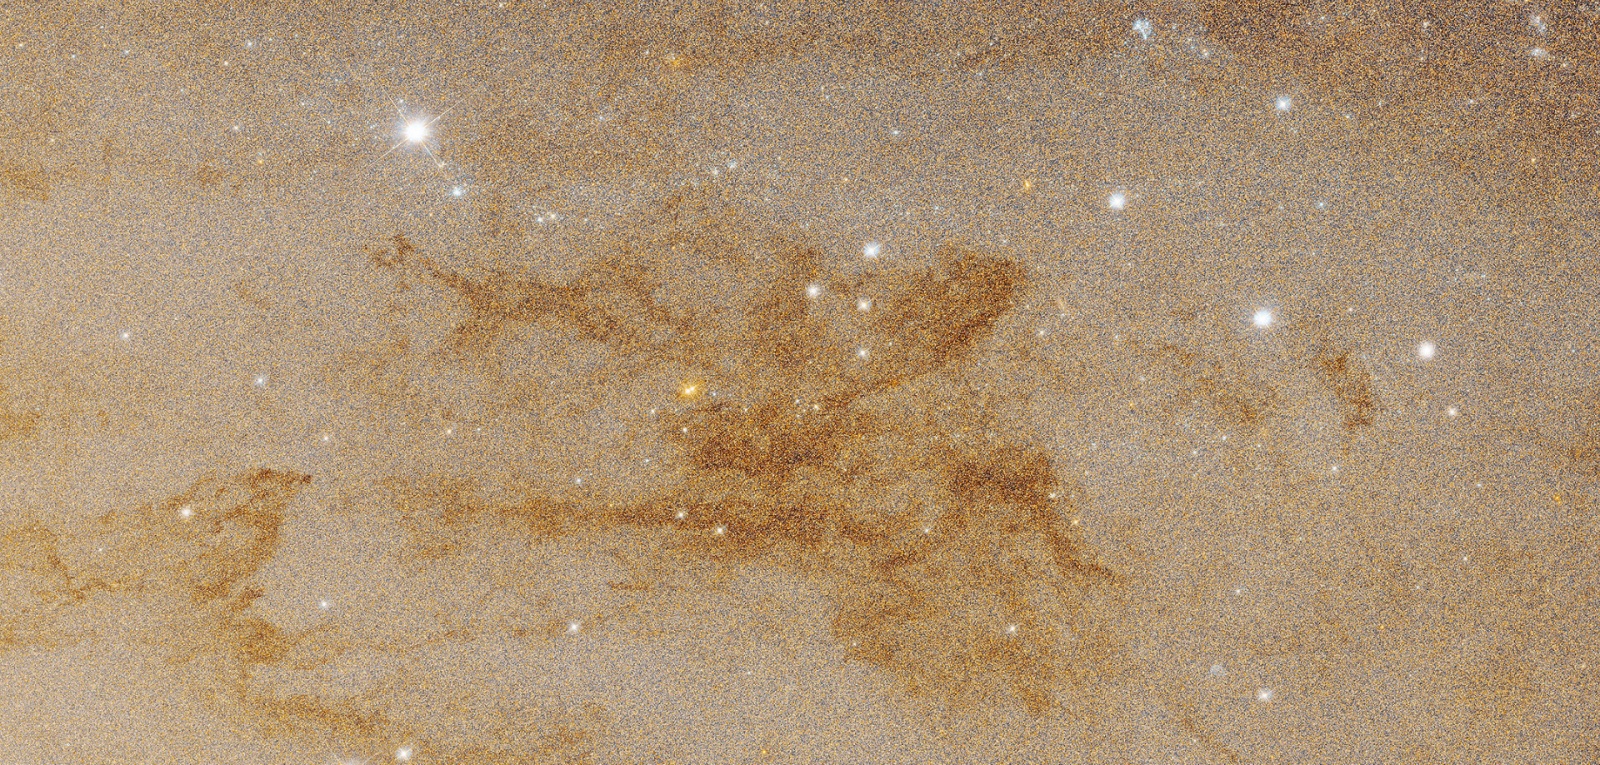 Фрагмент центрального региона галактики Андромеды. Снимок космического телескопа имени Эдвина Хаббла  